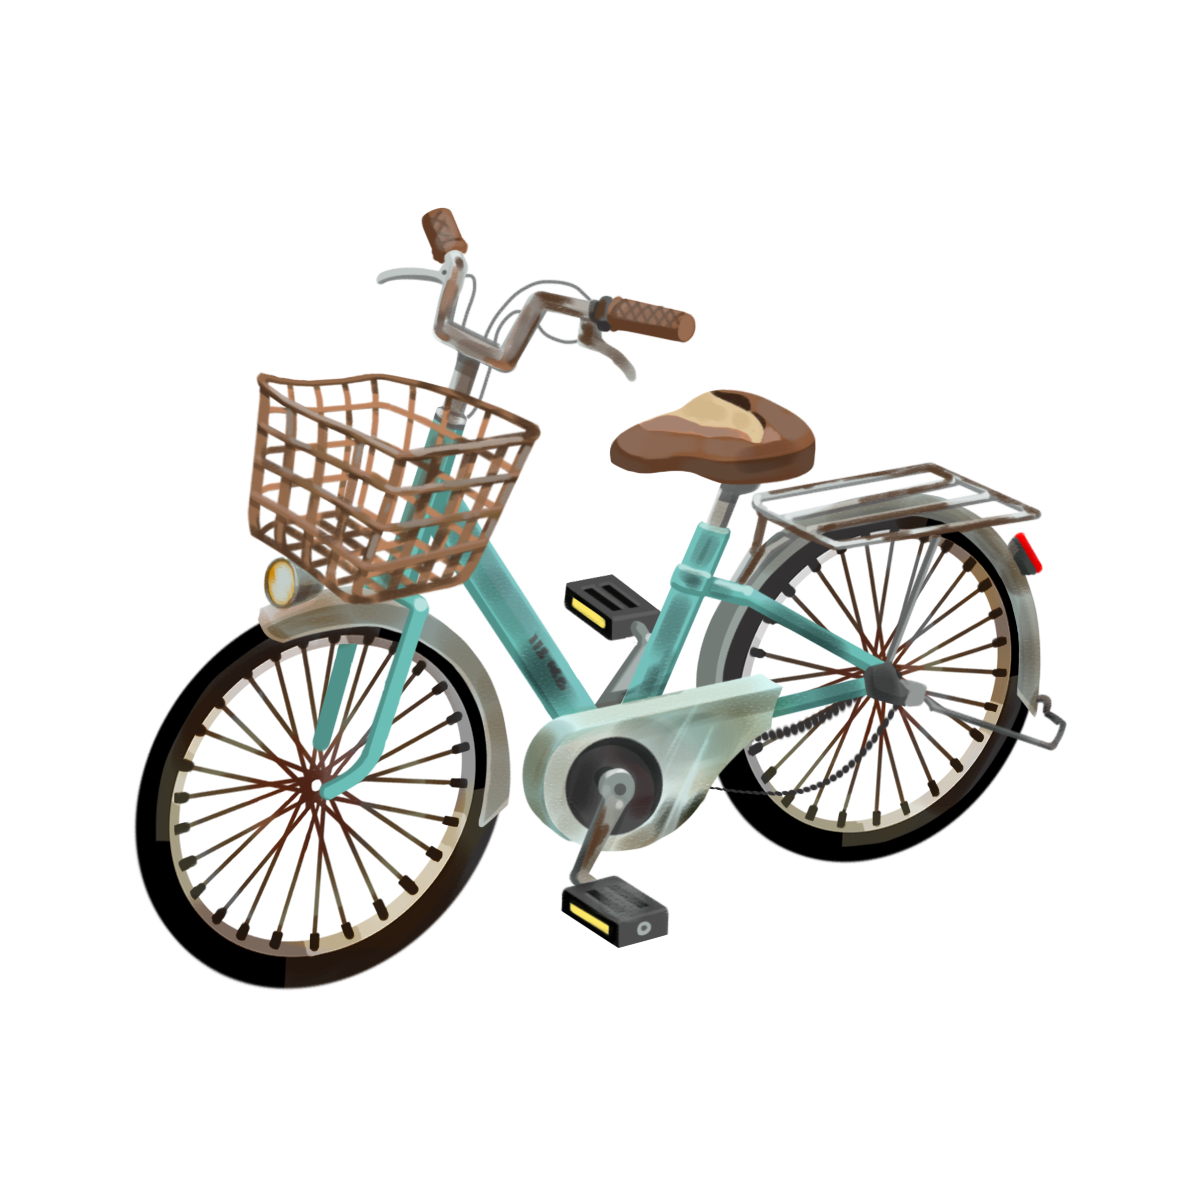 壊れた自転車のイラスト エコのモト